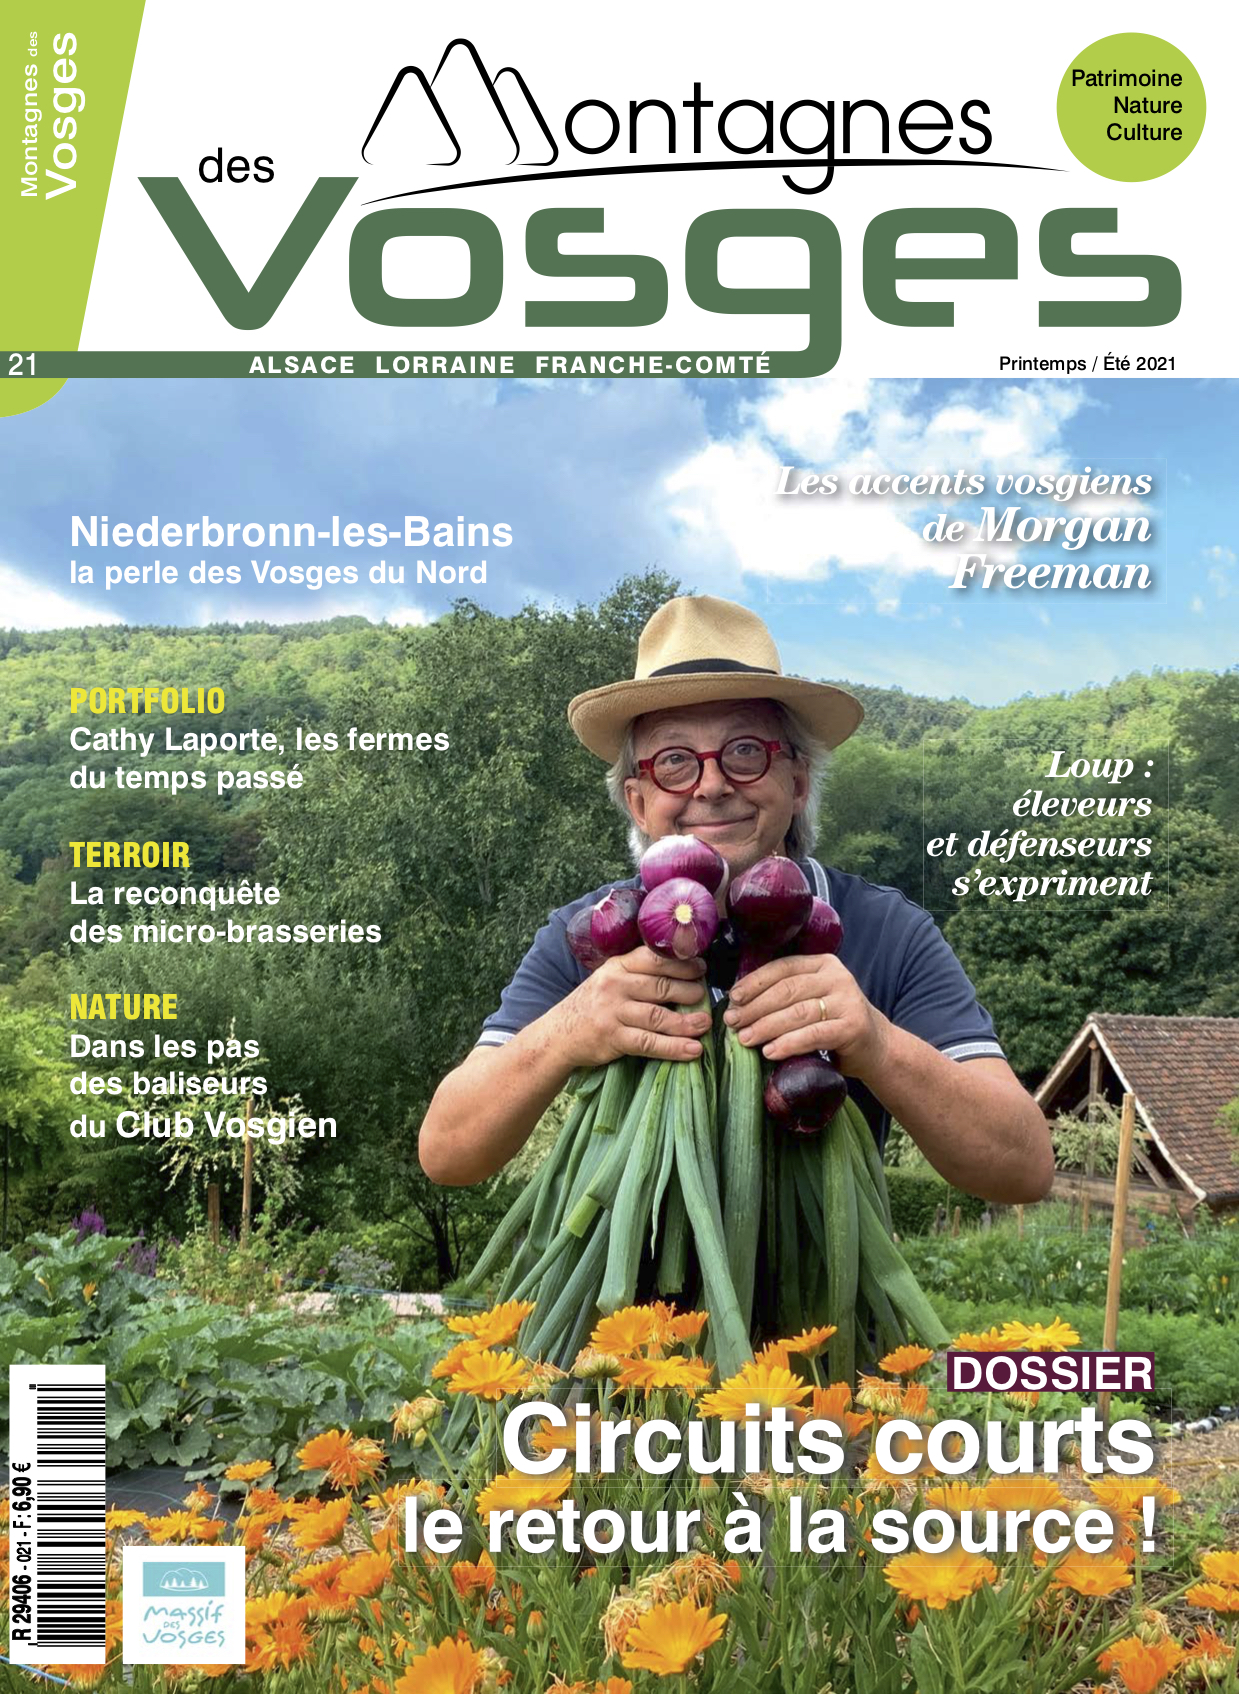 Magazine Montagnes des vosges - Montagnes des Vosges été 2021 est paru !